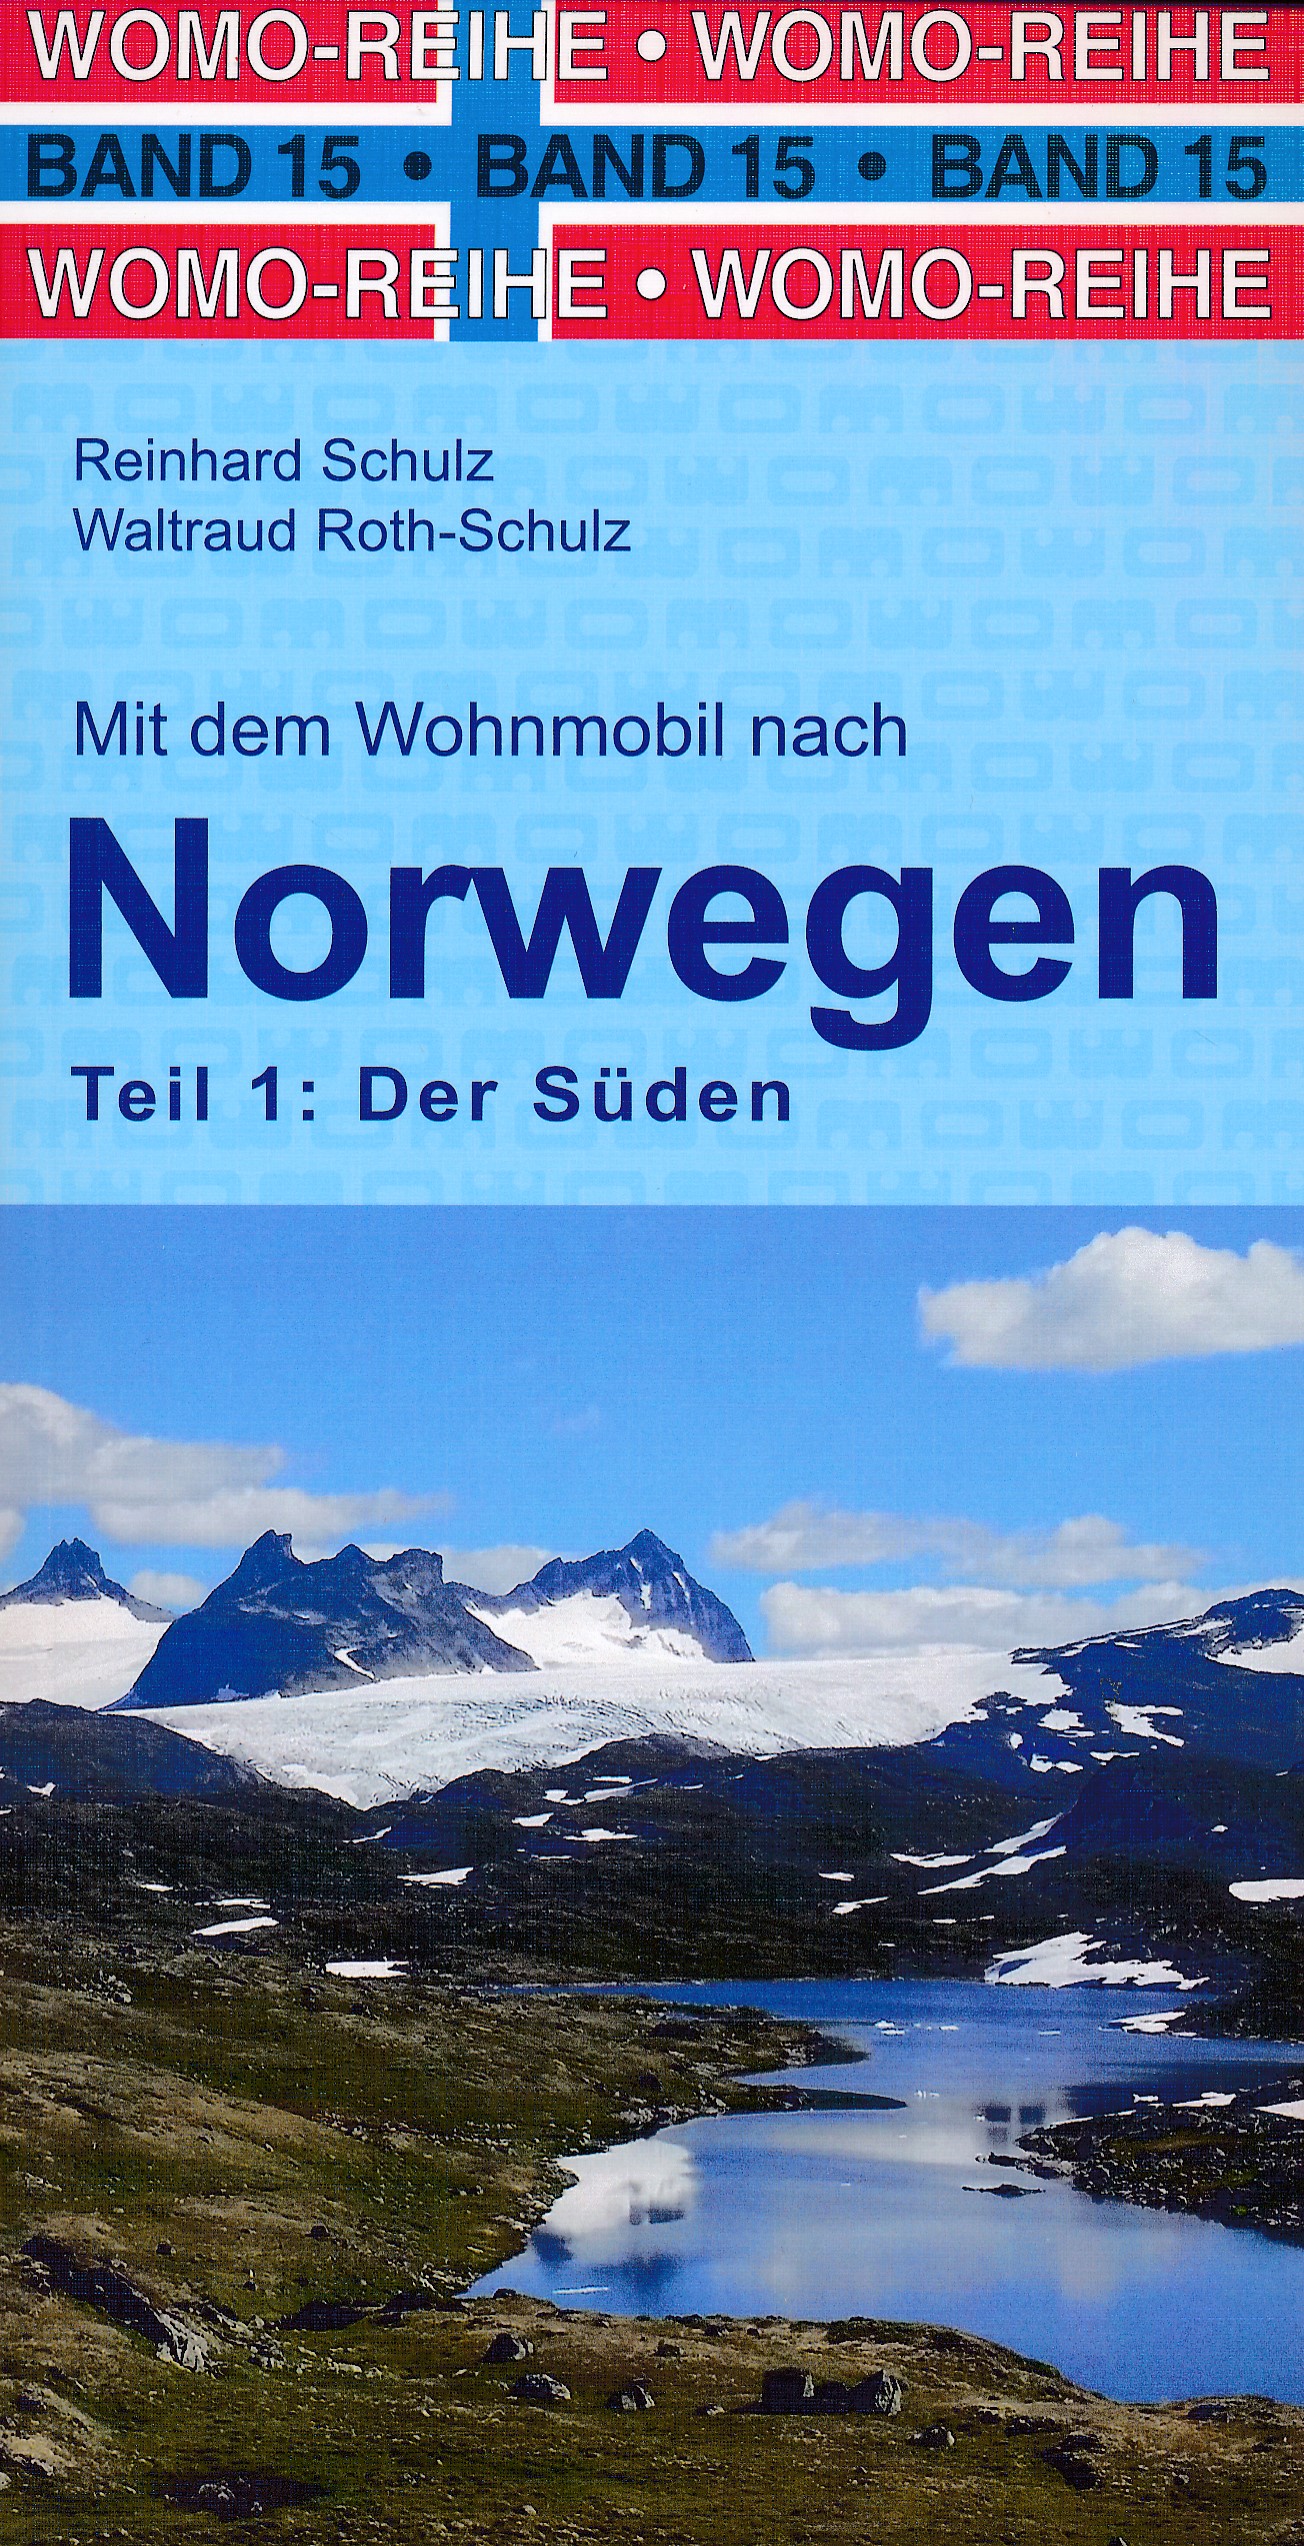 Online bestellen: Campergids 15 Mit dem Wohnmobil nach Süd-Norwegen - zuid Noorwegen | WOMO verlag